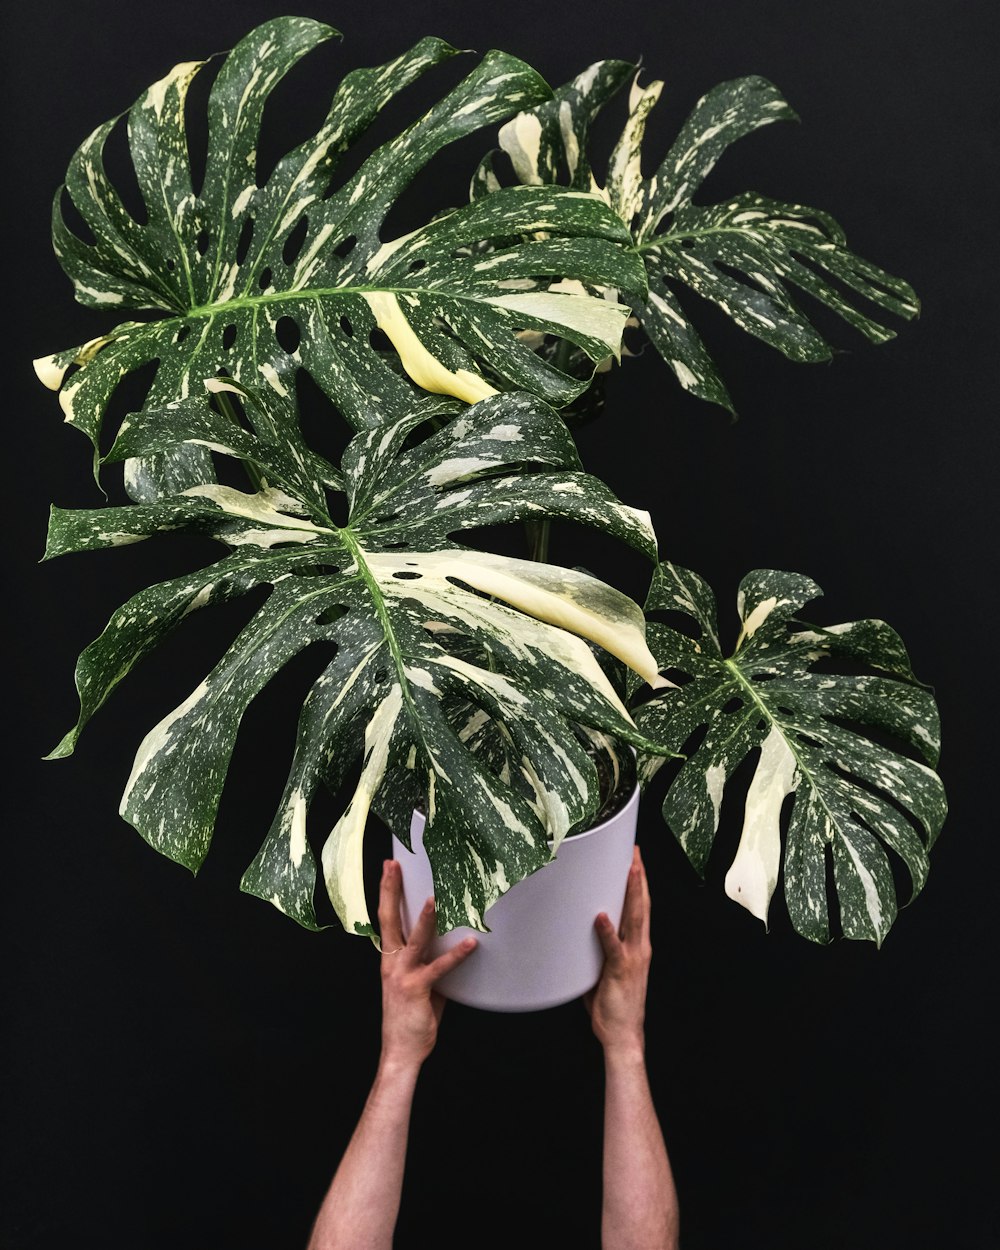 Una persona sosteniendo una planta en maceta frente a un fondo negro